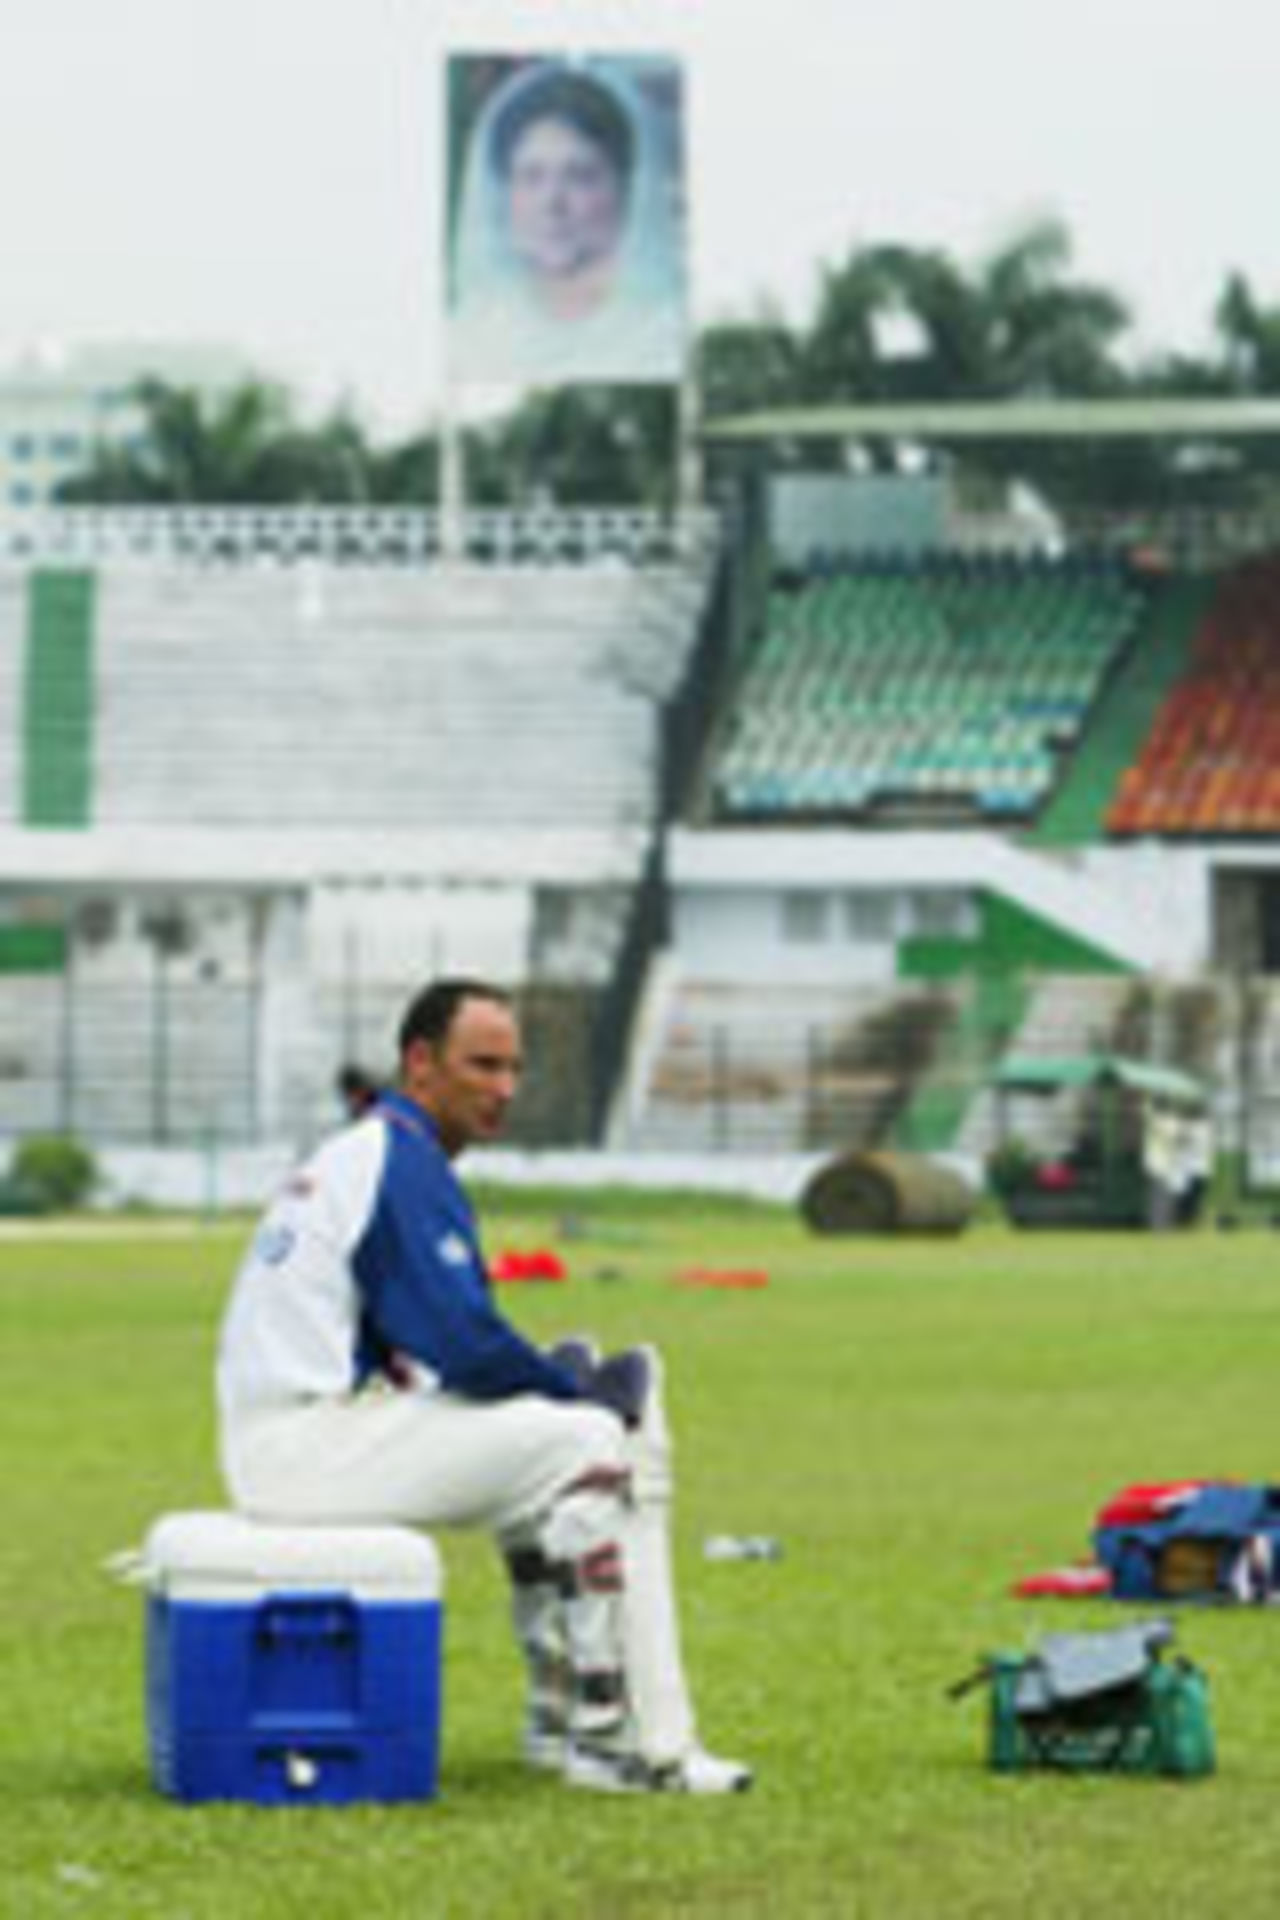 Nasser Hussain siitting in Bangabandhu Stadium in Dhaka, ahead of Bang v Eng, 1st Test, October 20, 2003